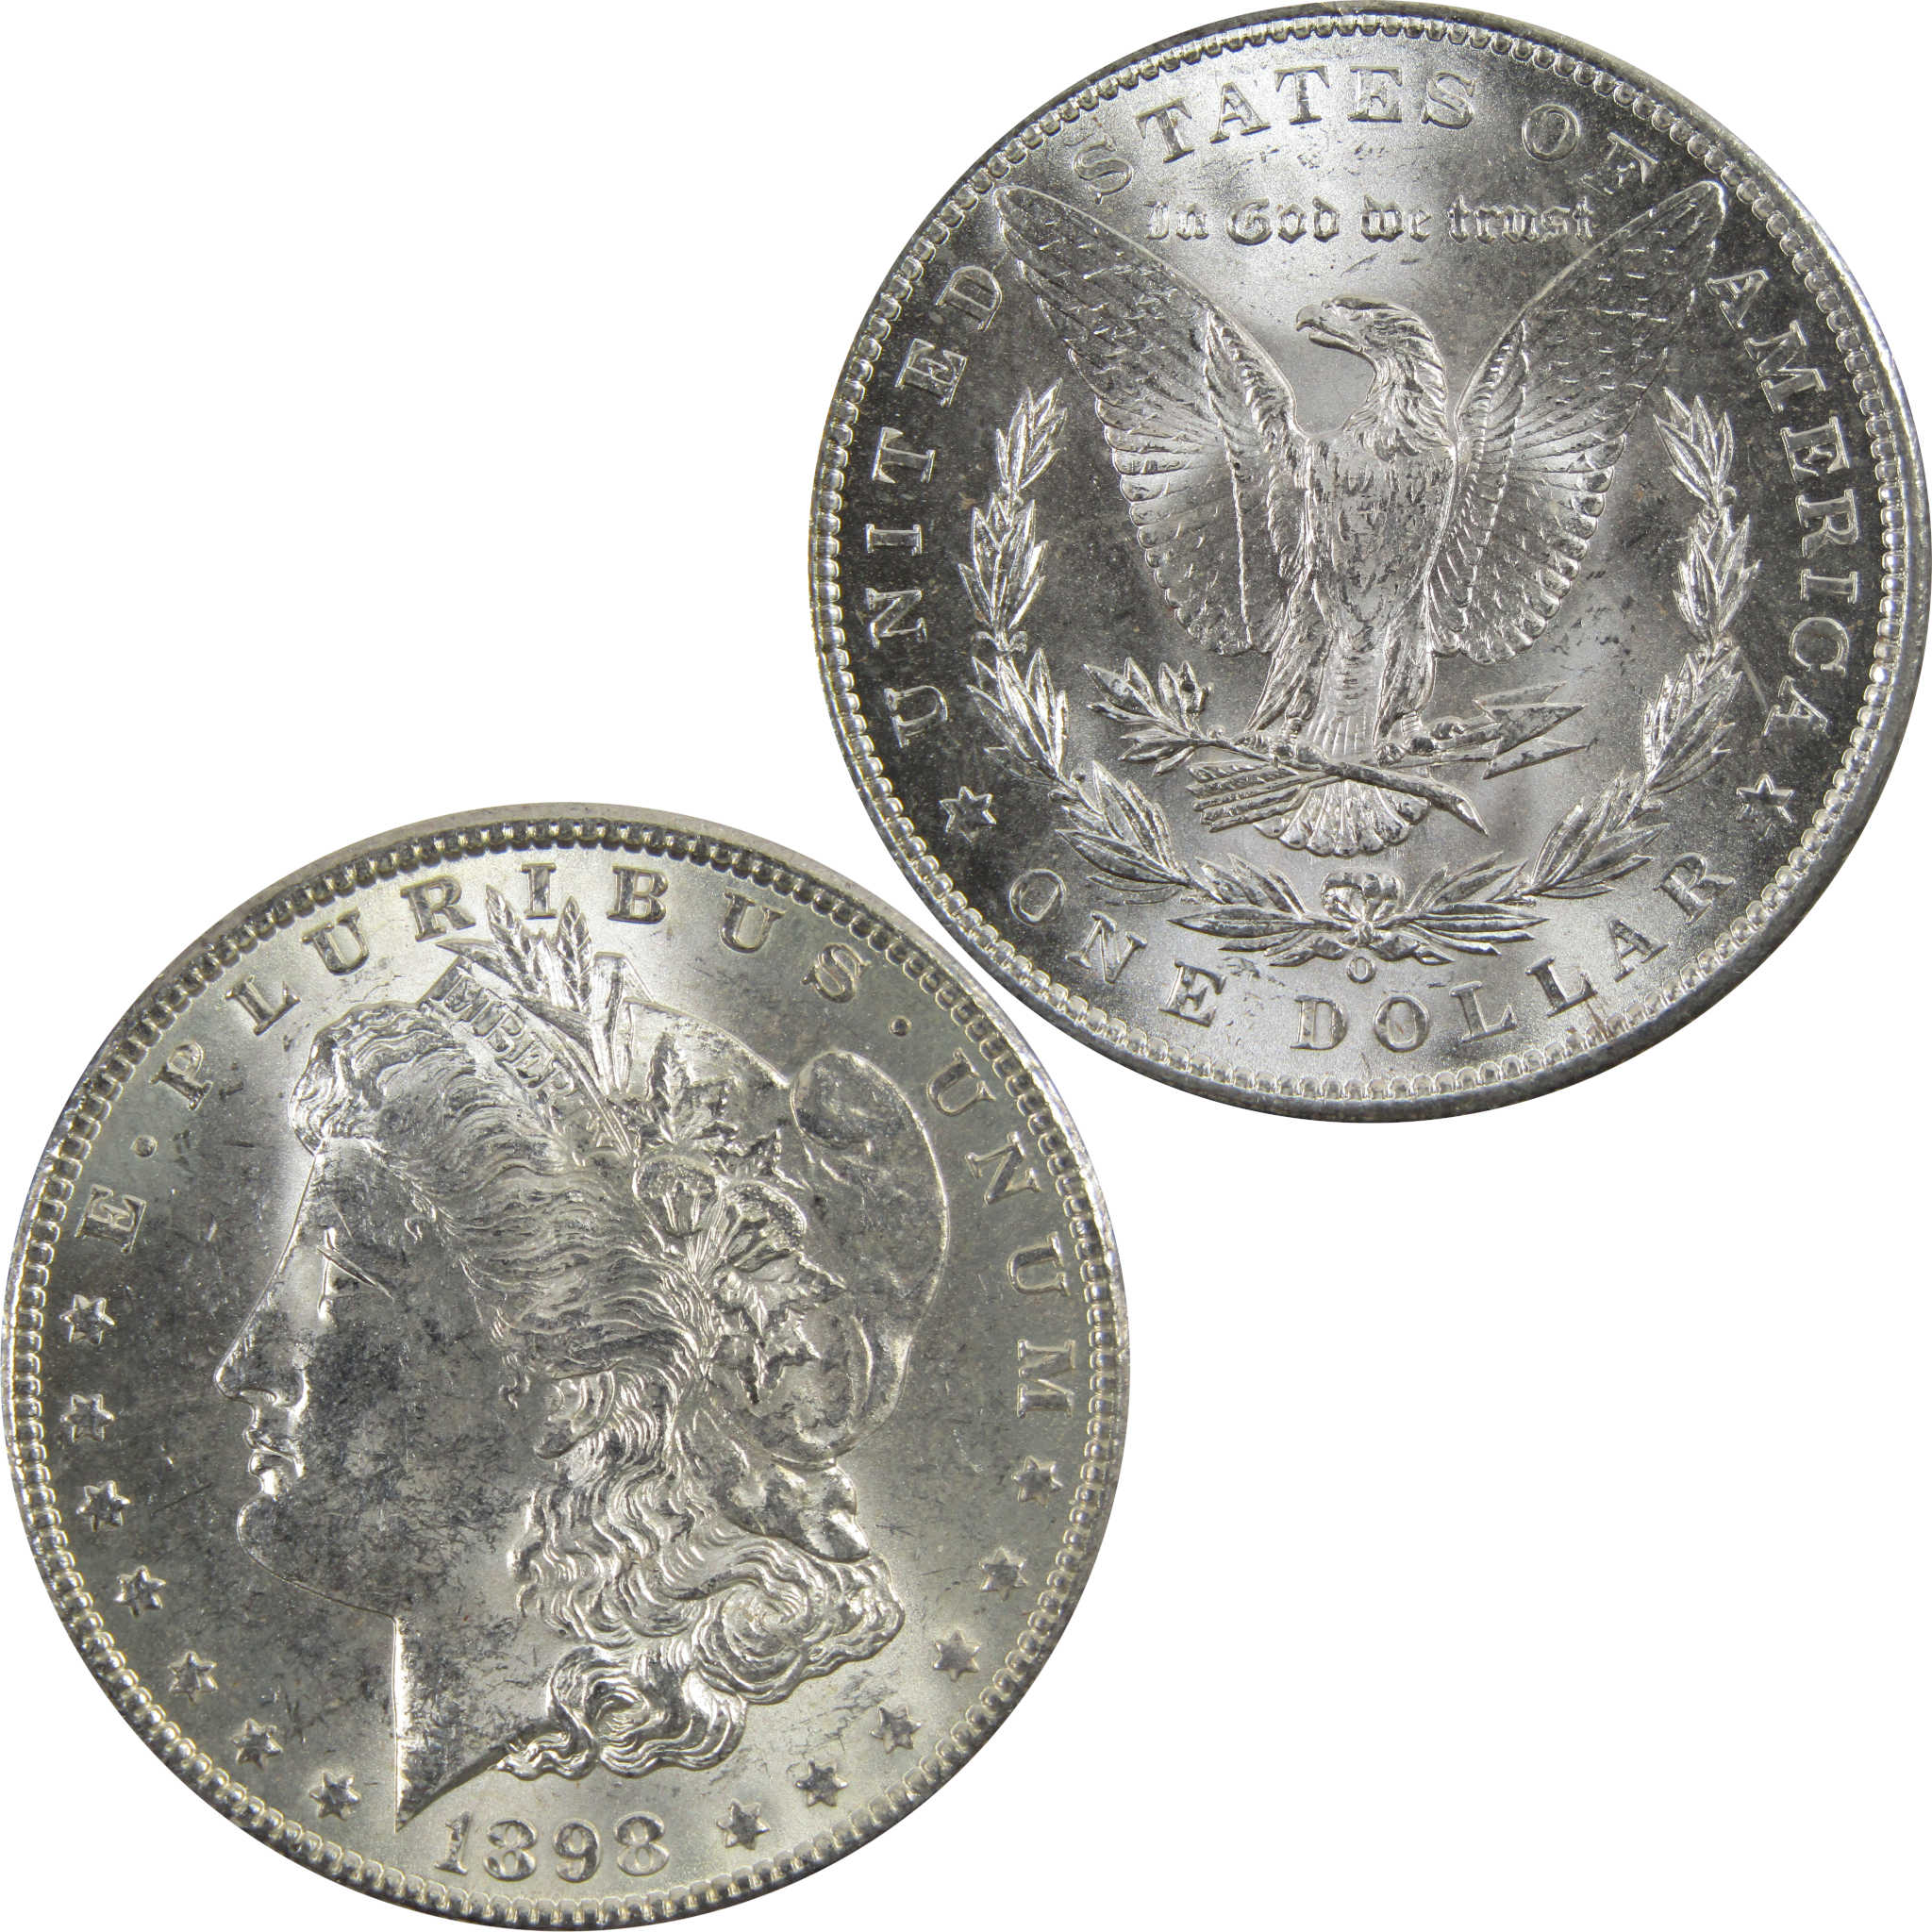 1898 O Morgan Dollar BU Uncirculated 90% Silver $1 Coin SKU:I5236 - Morgan coin - Morgan silver dollar - Morgan silver dollar for sale - Profile Coins &amp; Collectibles